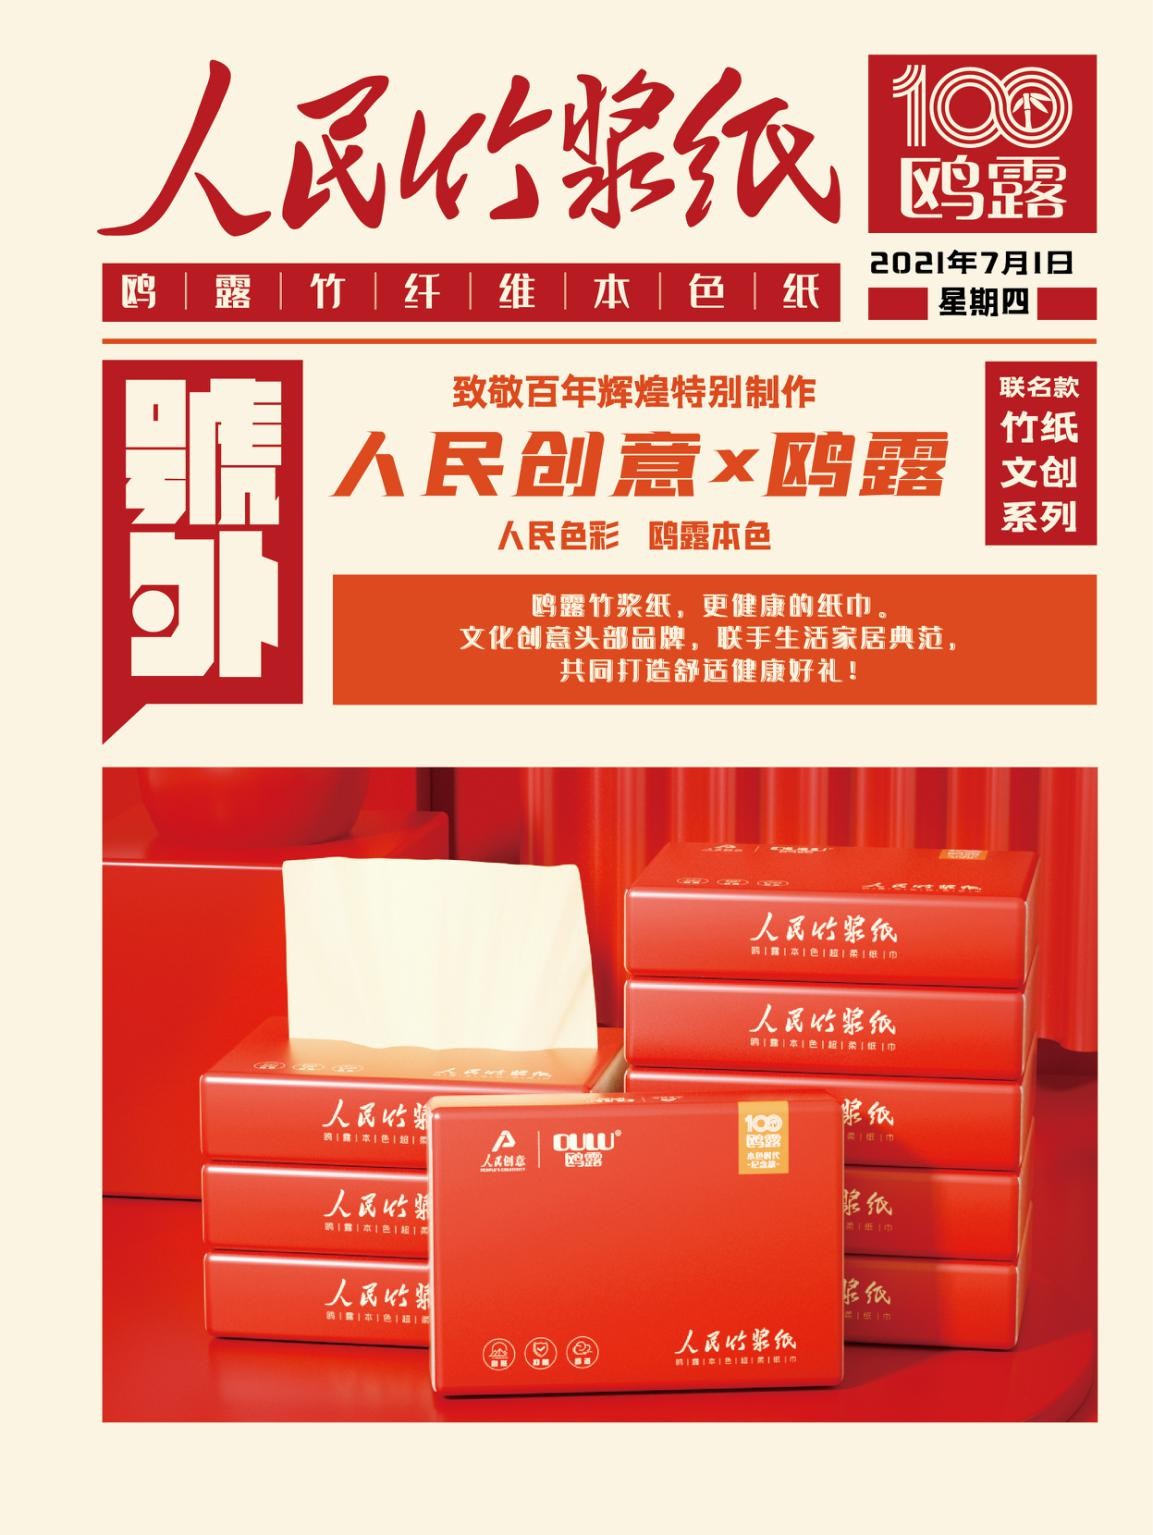 人民创意与鸥露联名推出“人民竹浆纸” 致敬中国力量！